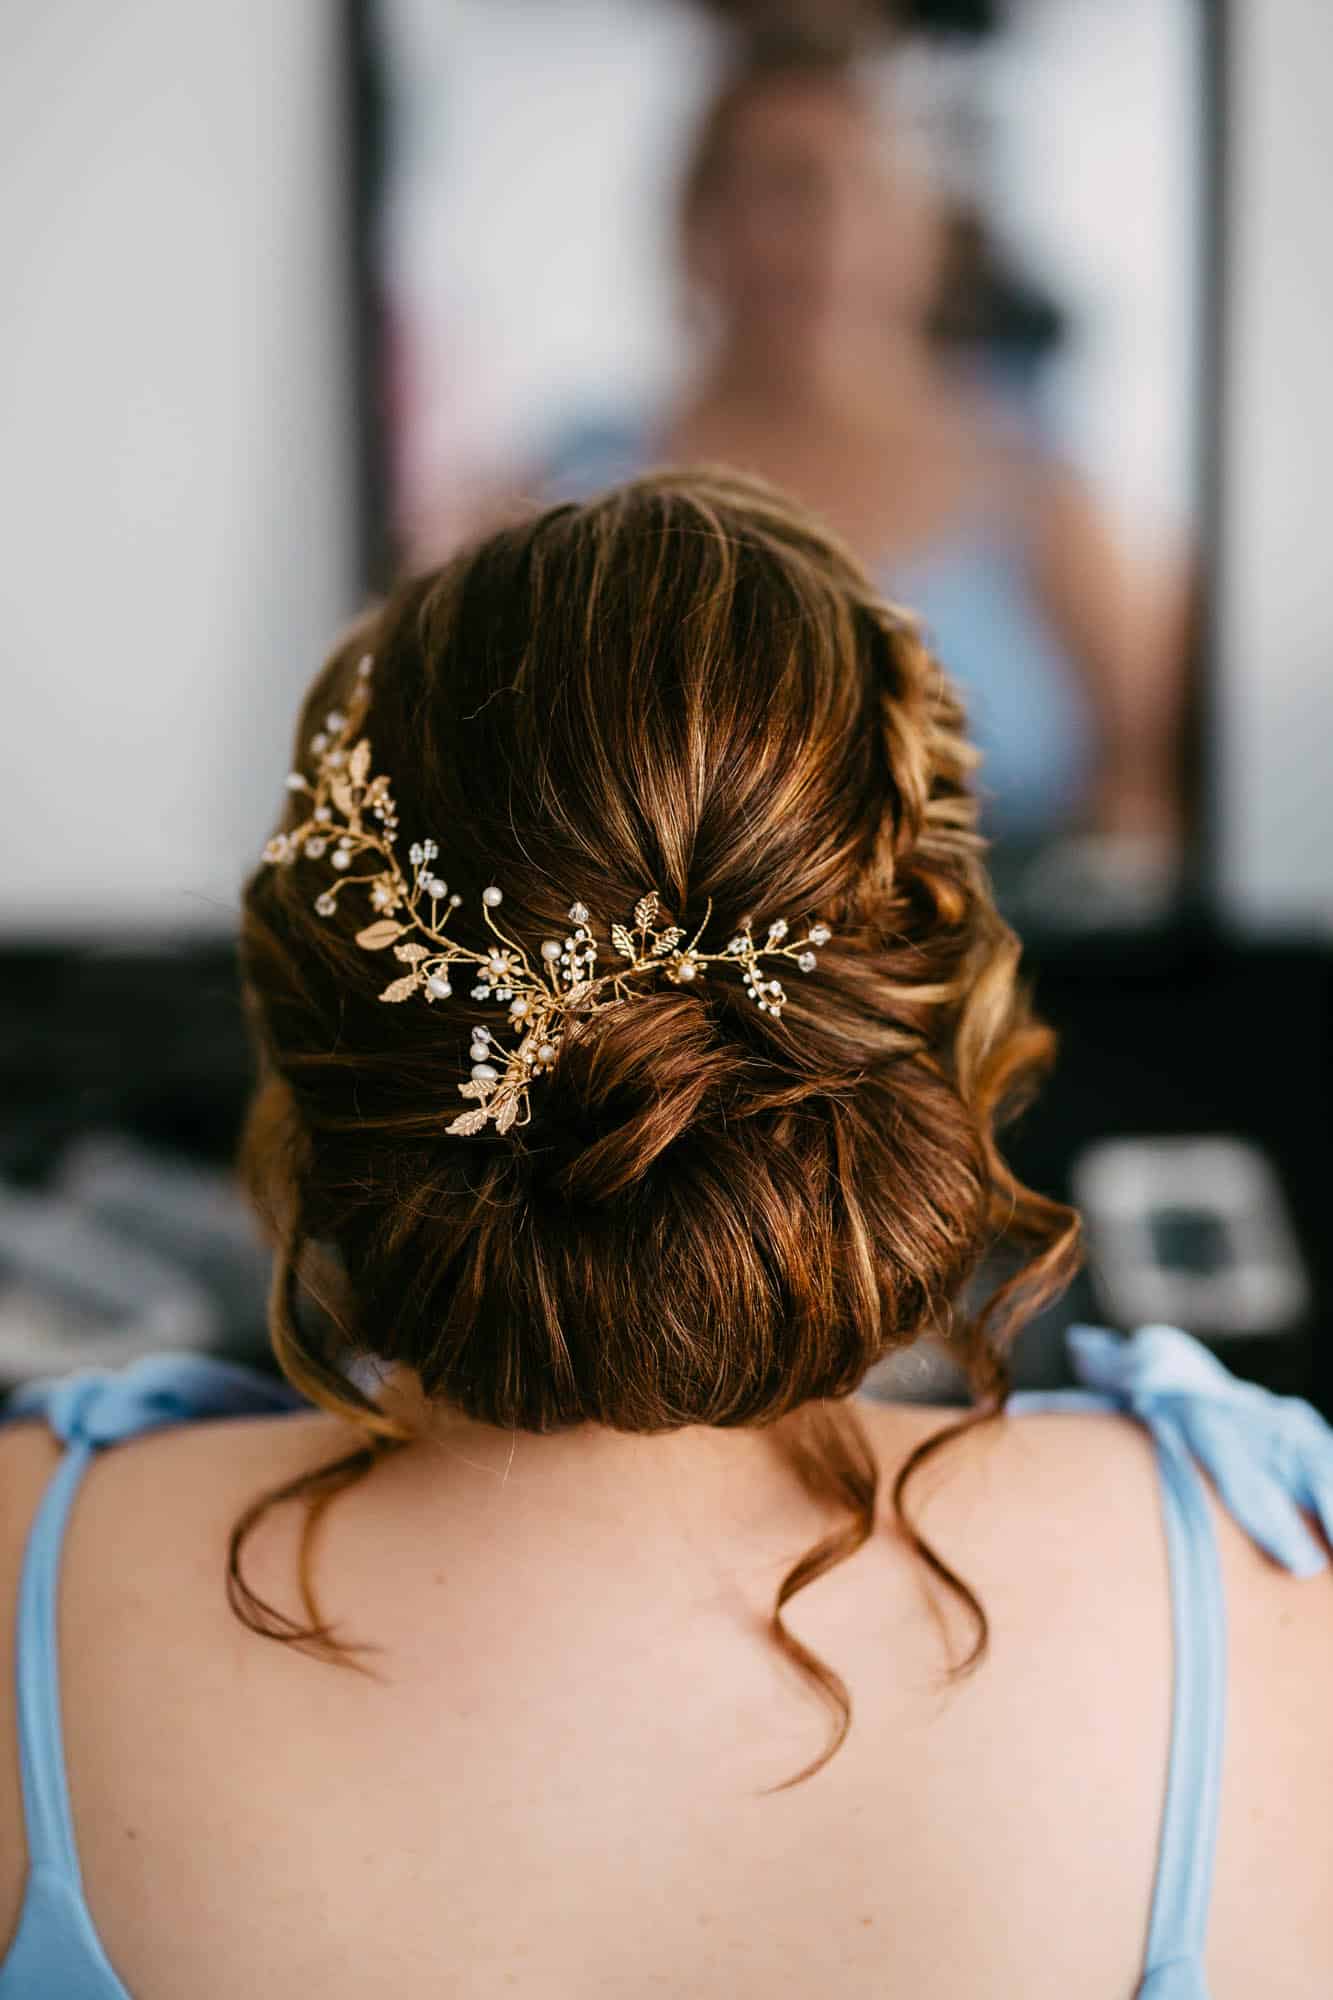     Beschrijving: De achterkant van het haar van een bruid, versierd met een gouden bloemhoofddeksel in haar bruidskapsels.